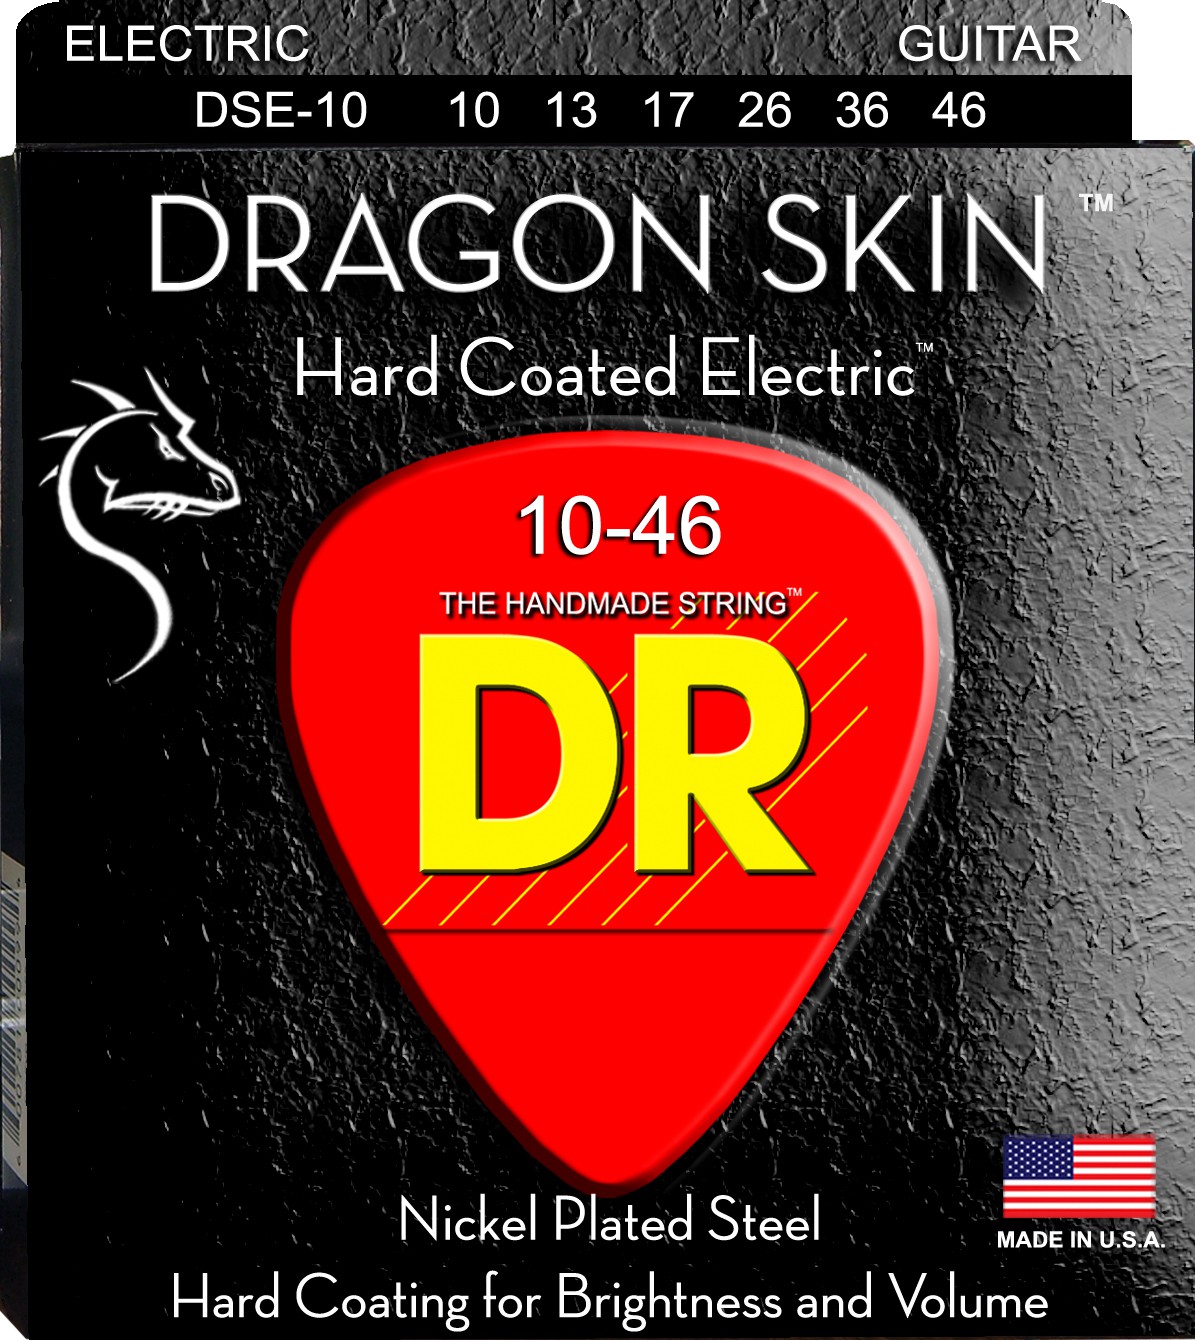 DR DRAGON SKIN - DSE-10 - struny do gitary elektrycznej Set, Medium, .010-.046